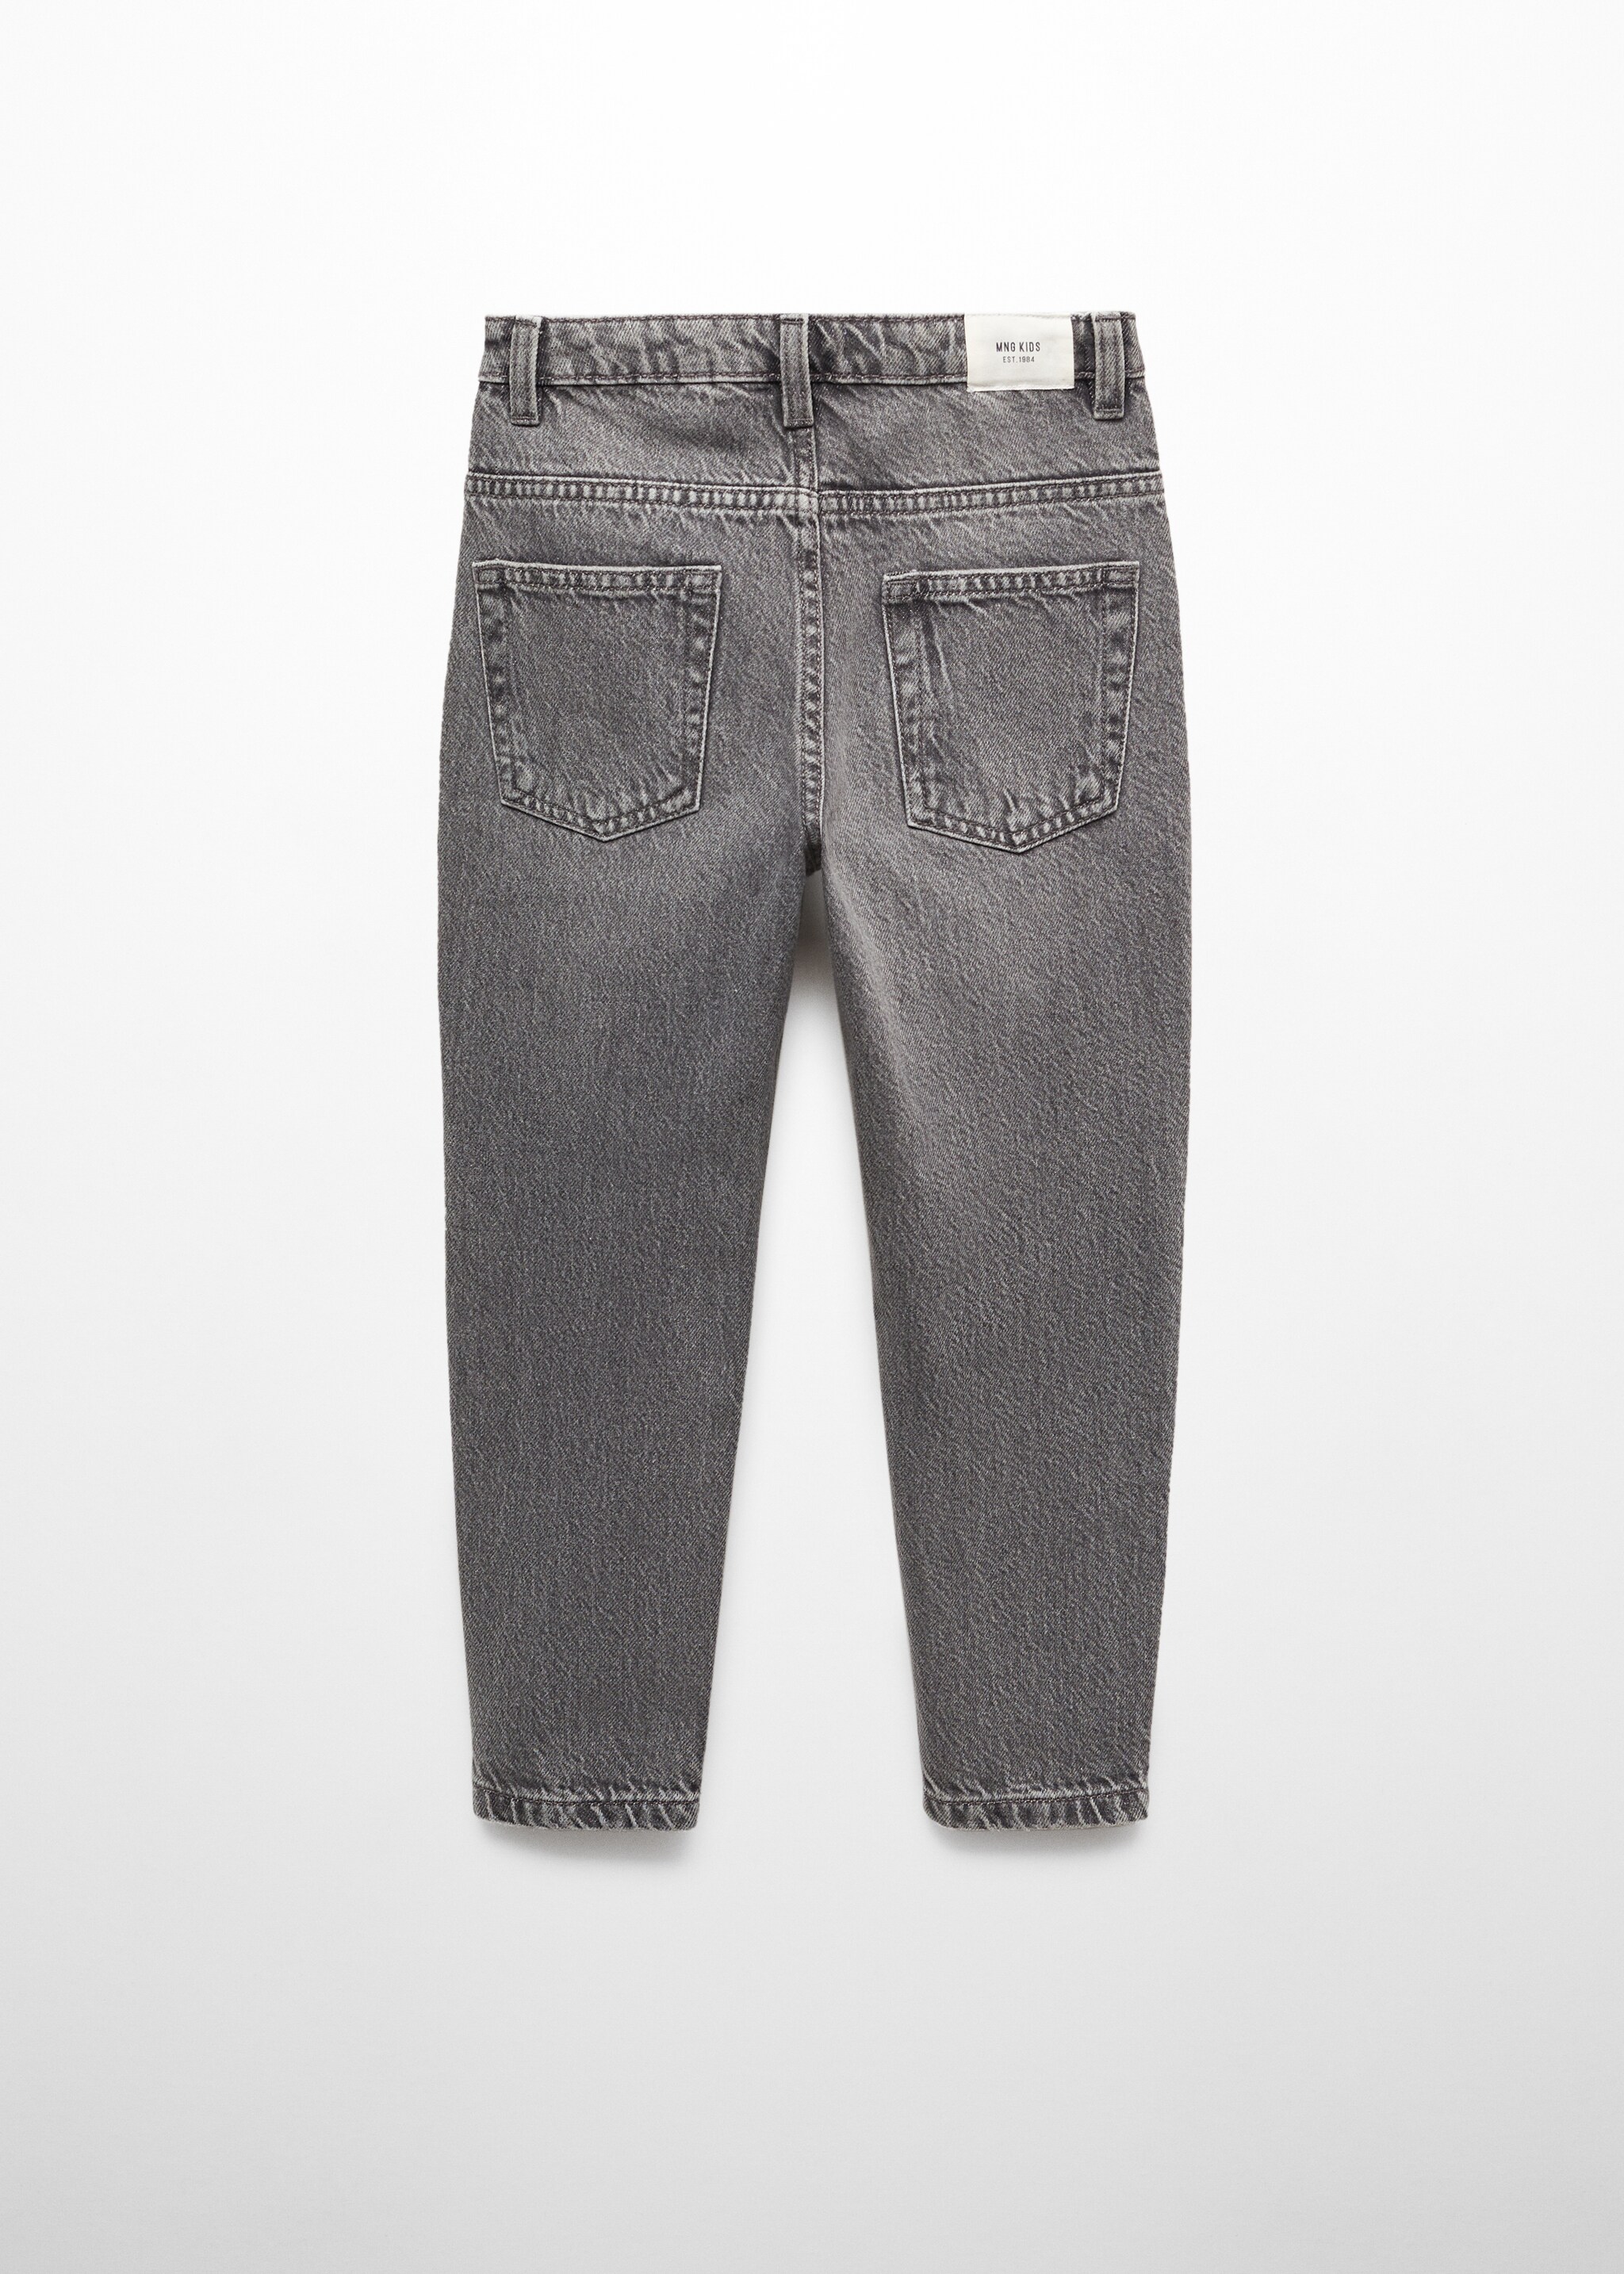 Нарочно рваные джинсы Dad - Обратная сторона изделия